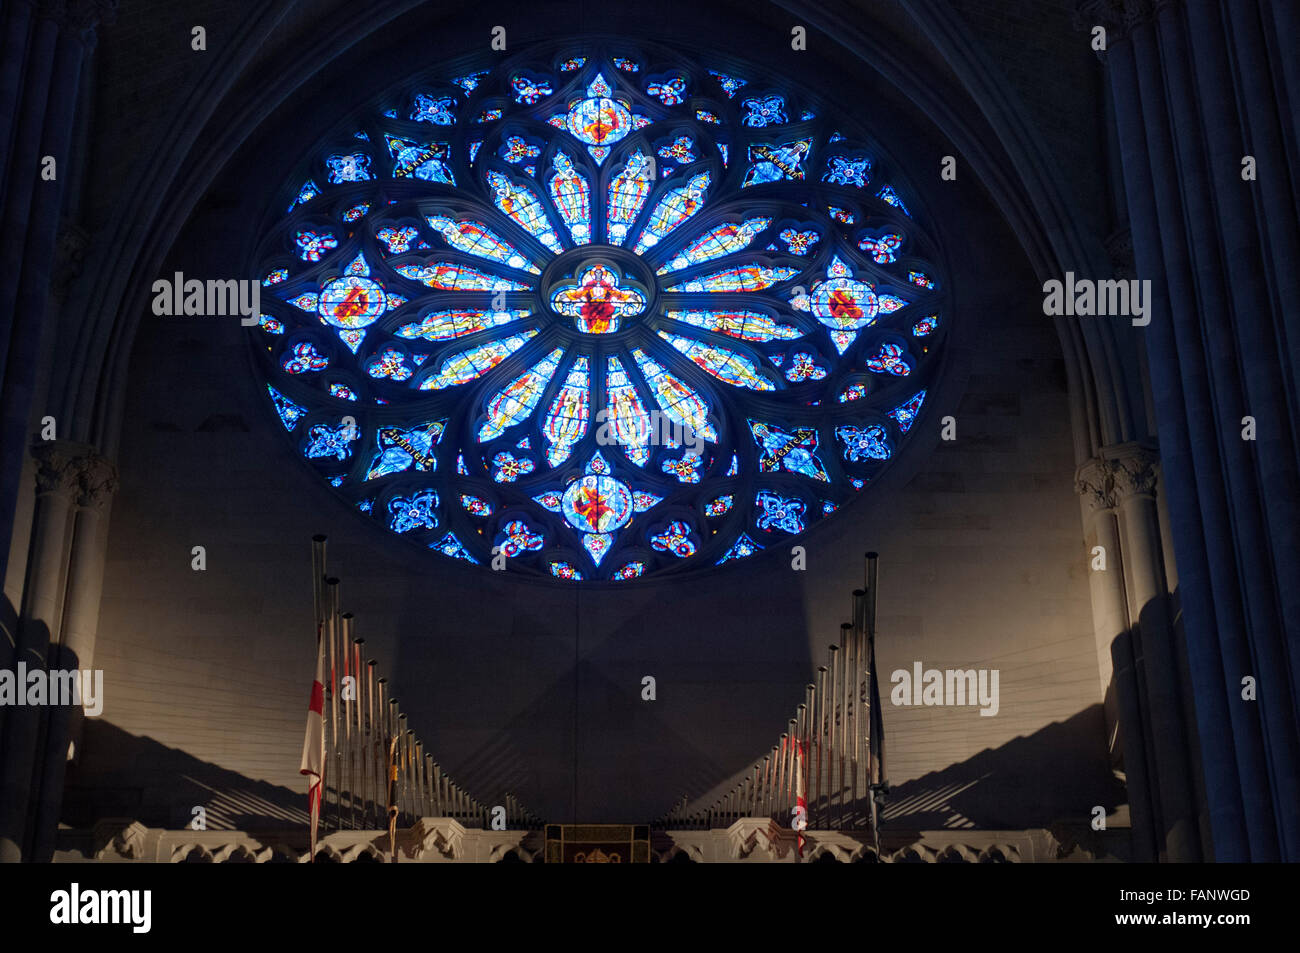 À l'intérieur de la Cathédrale Saint John the Divine à New York City, USA. Cathédrale Saint-Jean le Divin, dit être la plus grande cathédrale du monde, Manhattan, New York City, New York, USA Banque D'Images